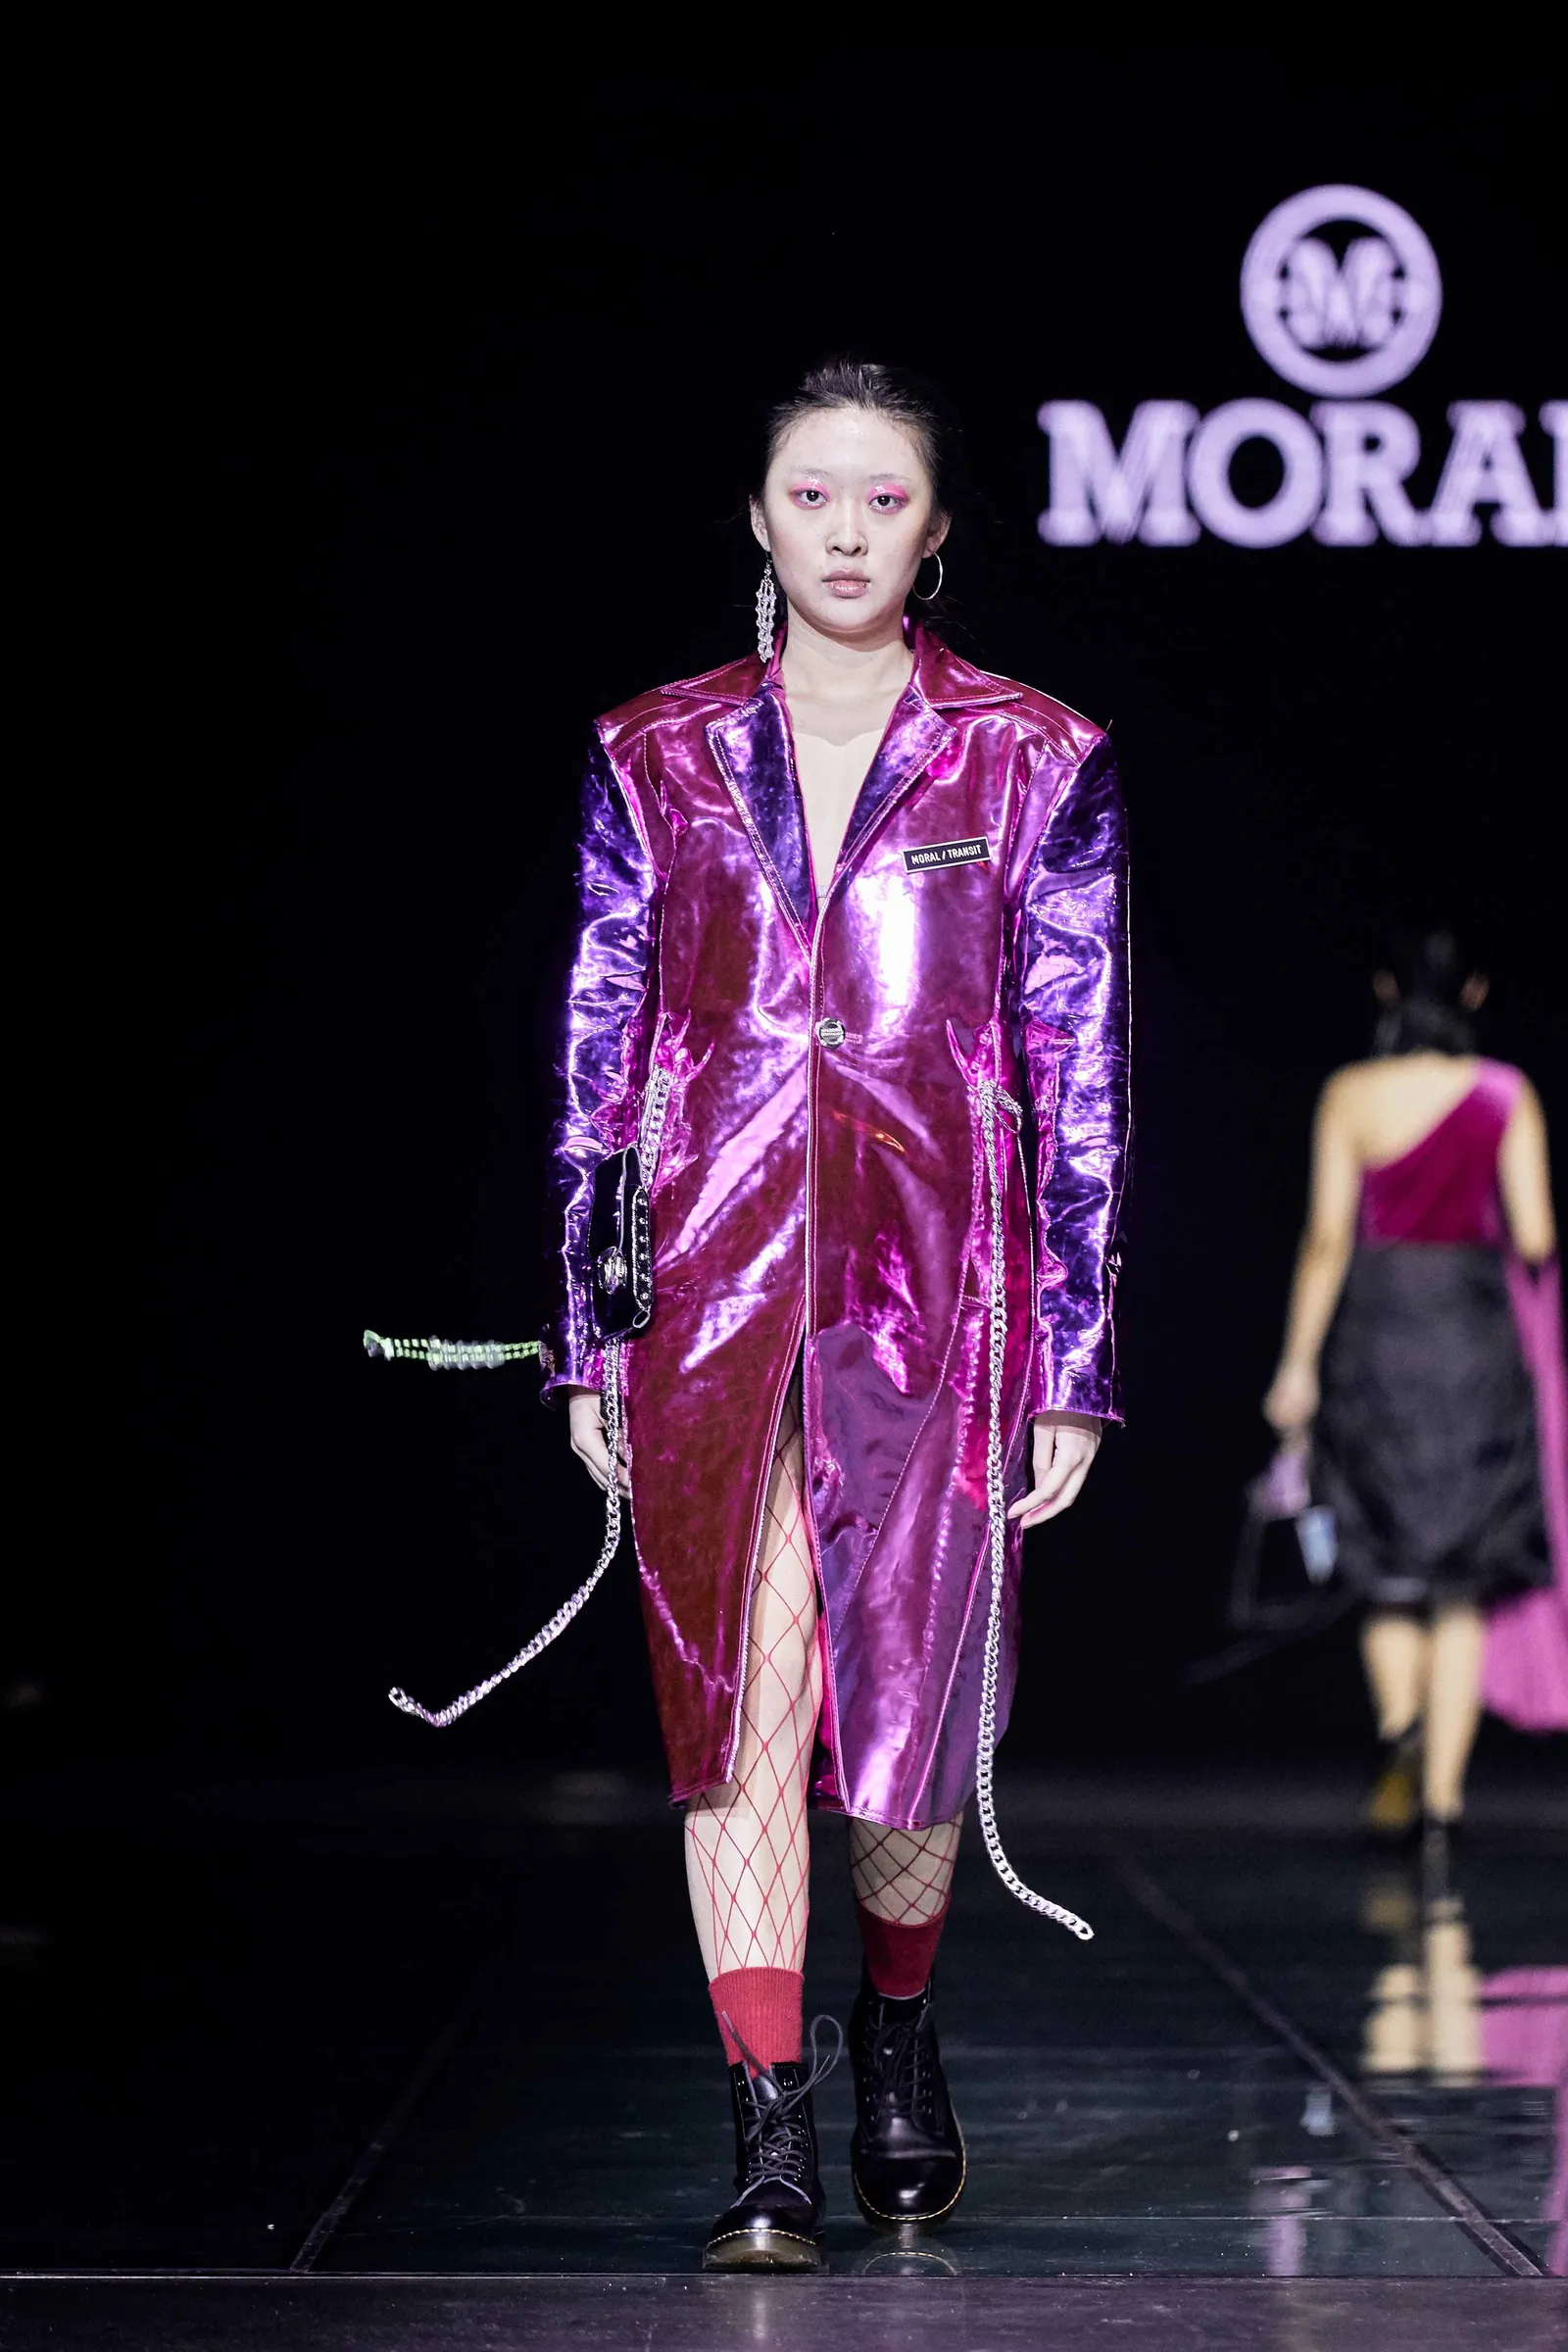 MORAL Tampil di Ajang Pekan Mode Harbin di China